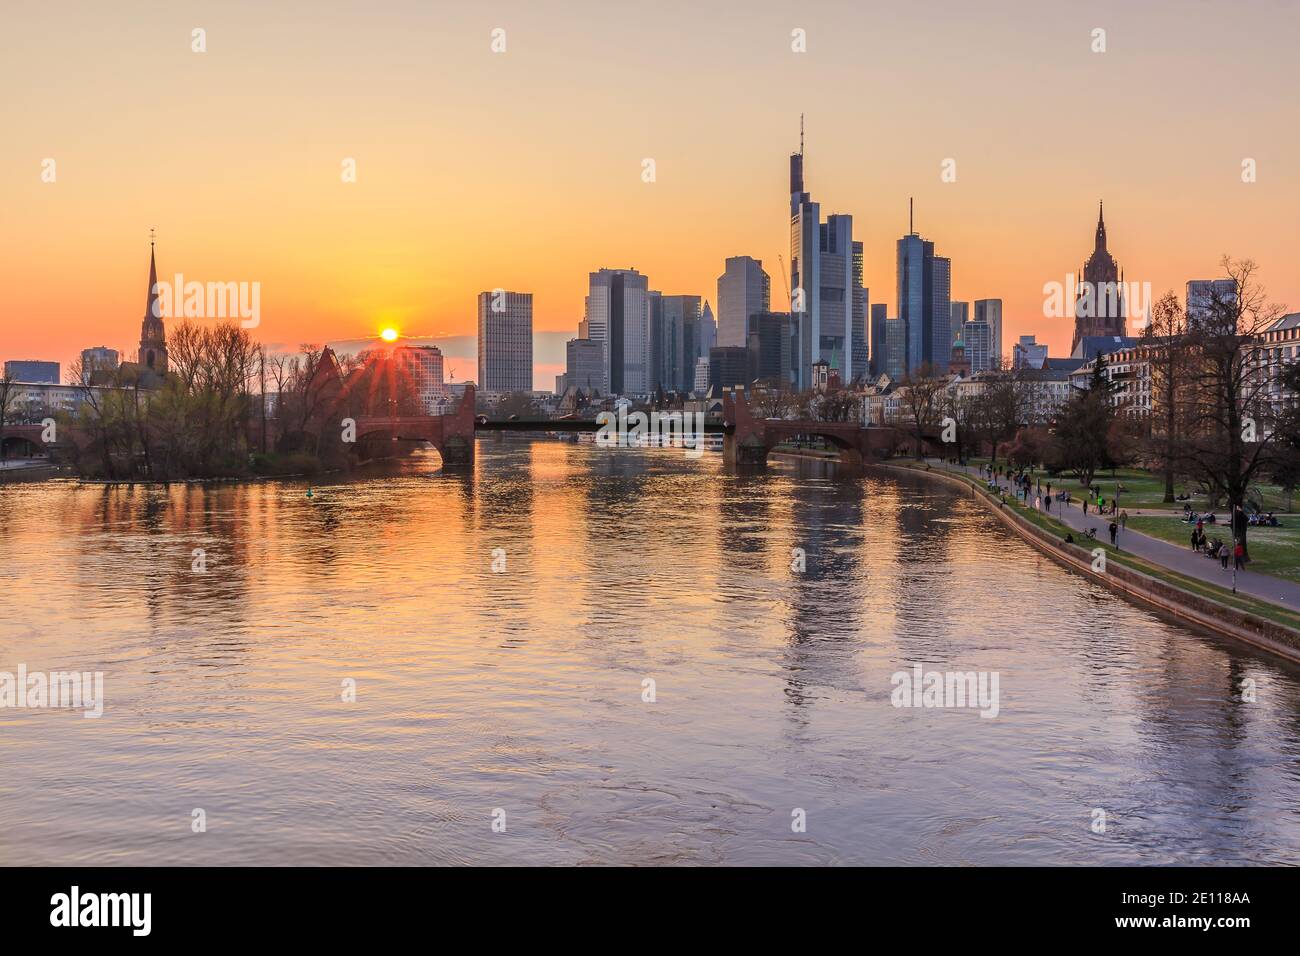 Sonnenuntergang über der Frankfurter Skyline. Wolkenkratzer, Geschäftshäuser am Horizont. Main mit Brücke und Park am Ufer. Reflexionen der s Stockfoto